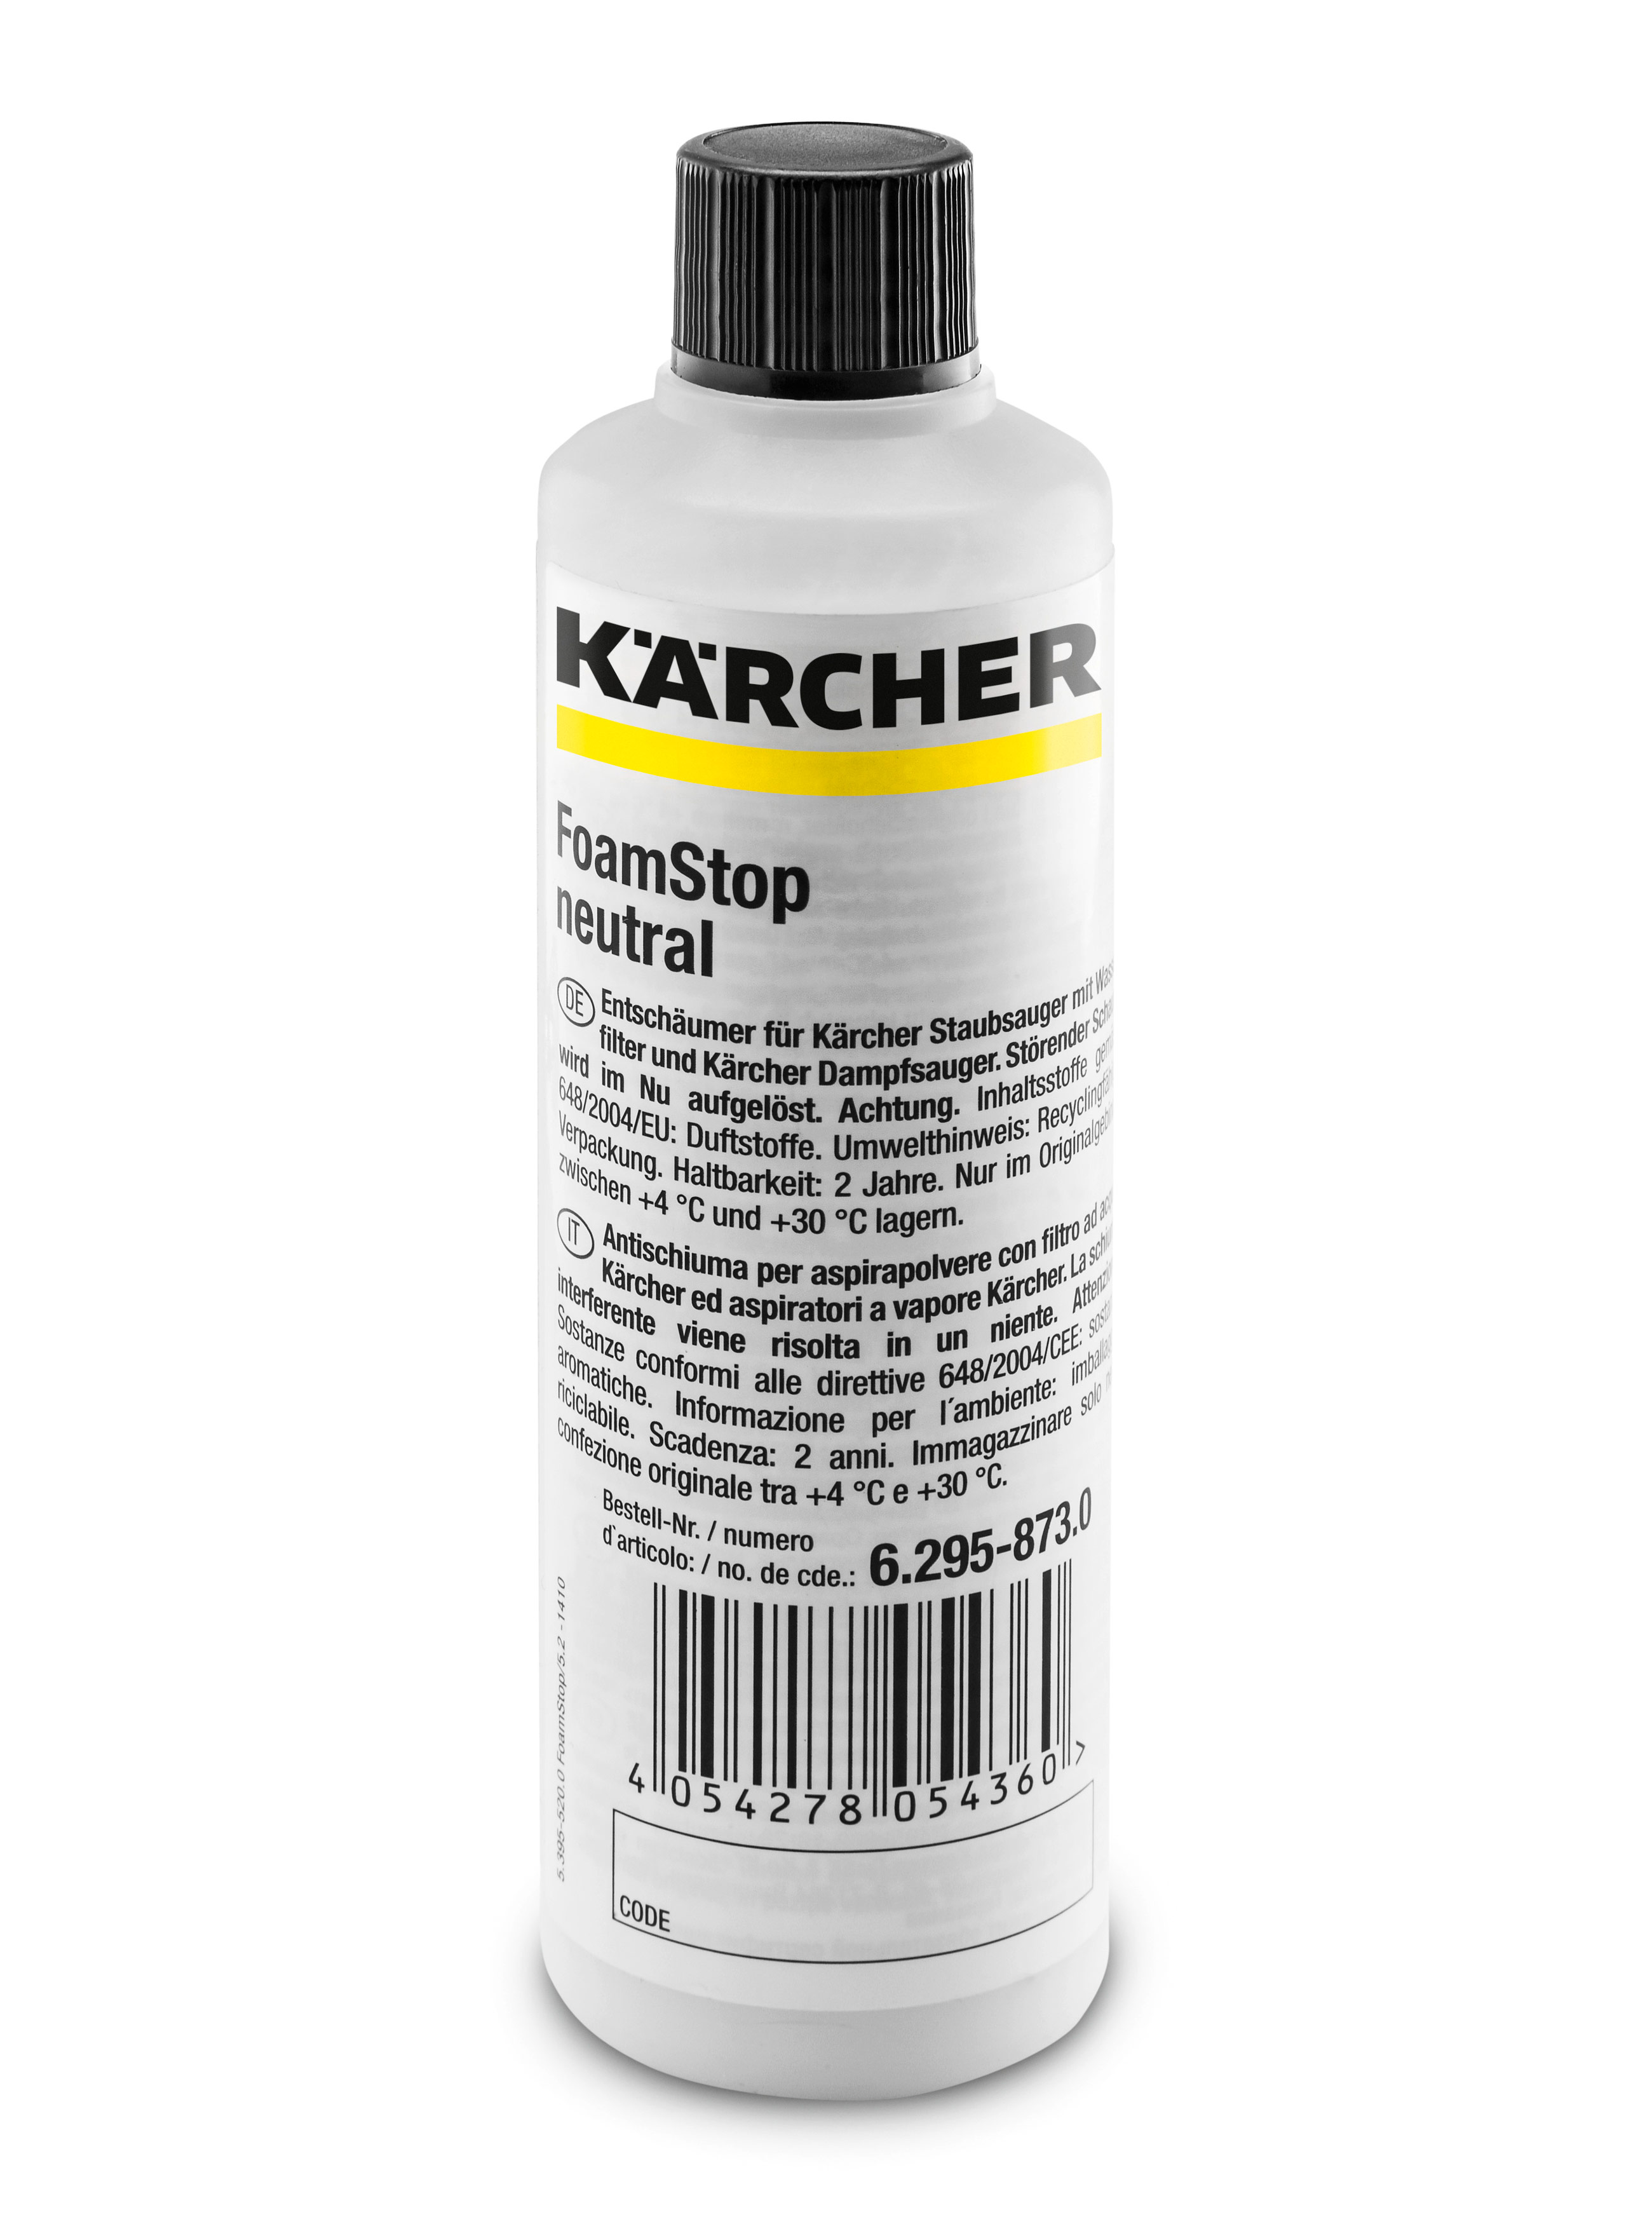 Пеногаситель Karcher 6.295-873.0 Foam Stop Neutral пеногаситель для пылесоса и поломоечных машин defoam cleanbox 1330025 250 мл